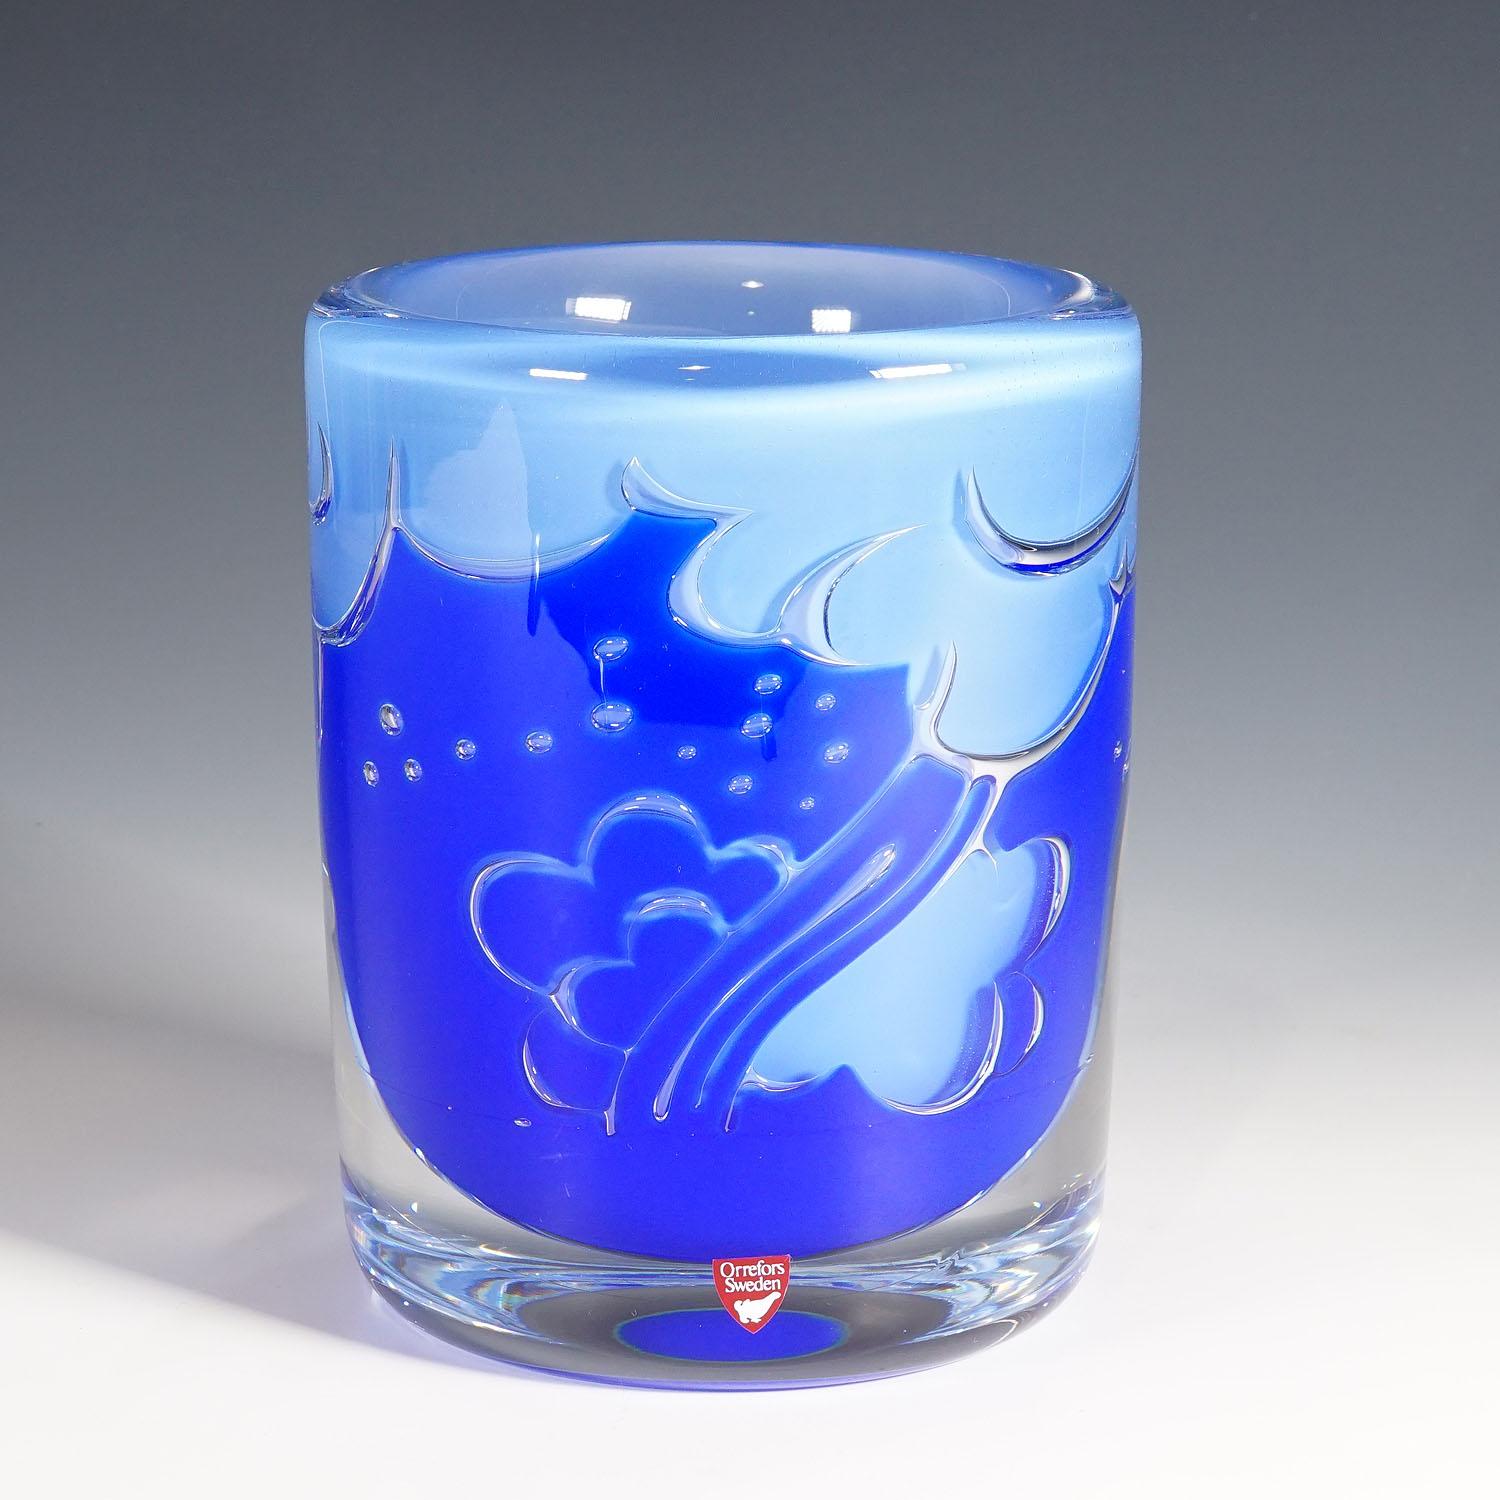 Vase ariel massif d'Olle Alberius pour Orrefors, Suède 1987

Un vase en verre d'art lourd de la série Ariel Cloud conçue par Olle Alberius pour Orrefors, Suède, en 1978. Verre bleu et bleu clair avec une couche de verre cristallin très épaisse